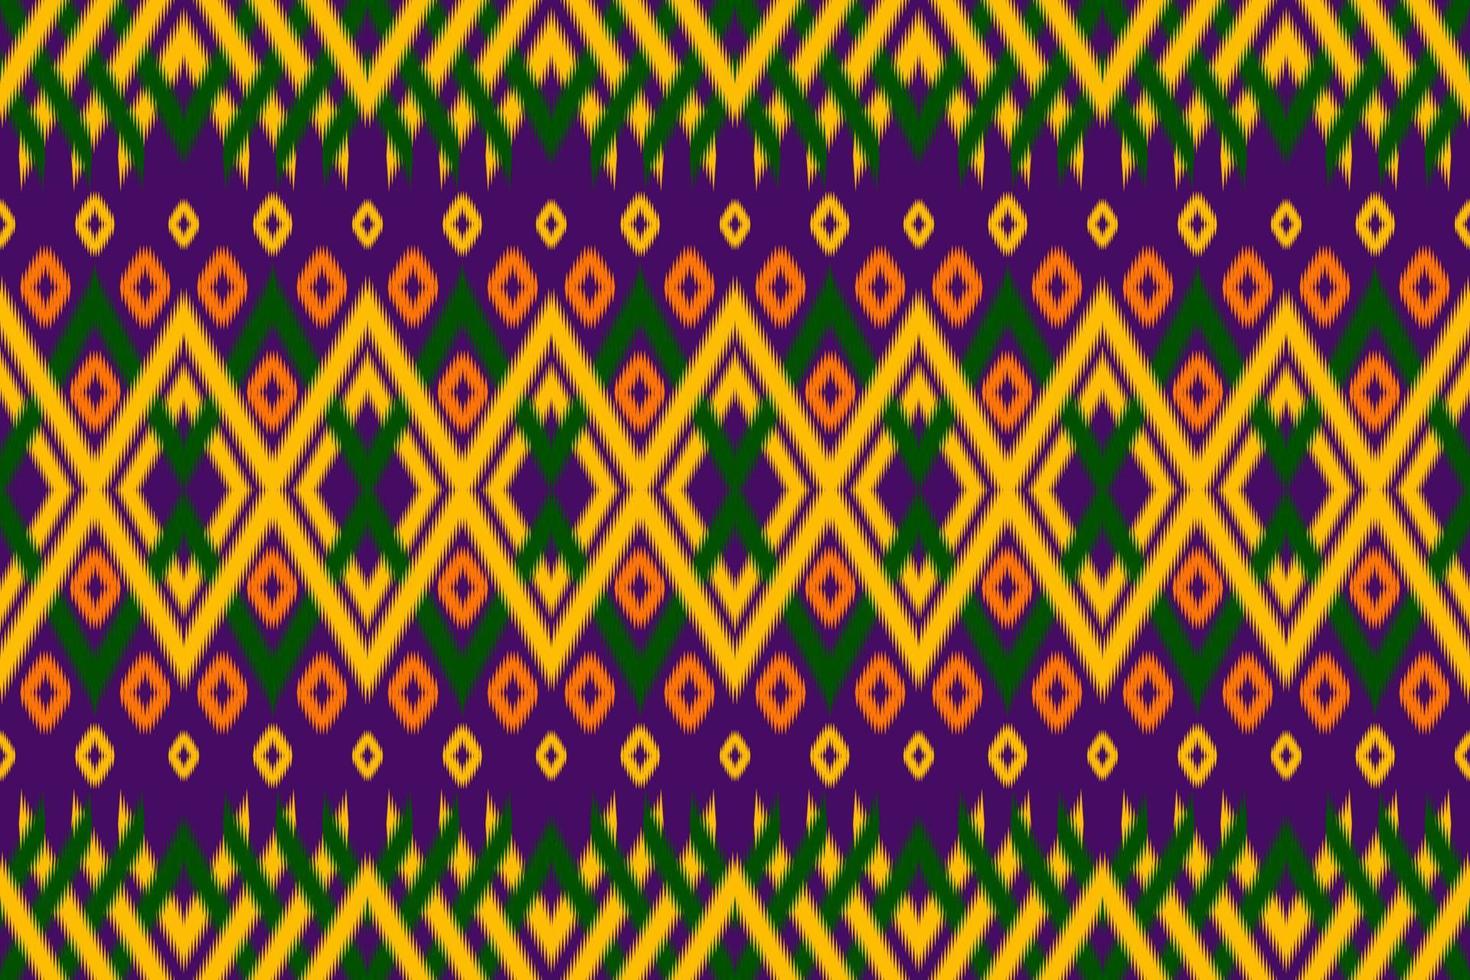 hermoso patrón de arte étnico geométrico tradicional. diseño para alfombras, papel tapiz, ropa, envoltura, batik, tela, ilustración vectorial. figura estilo bordado tribal. vector